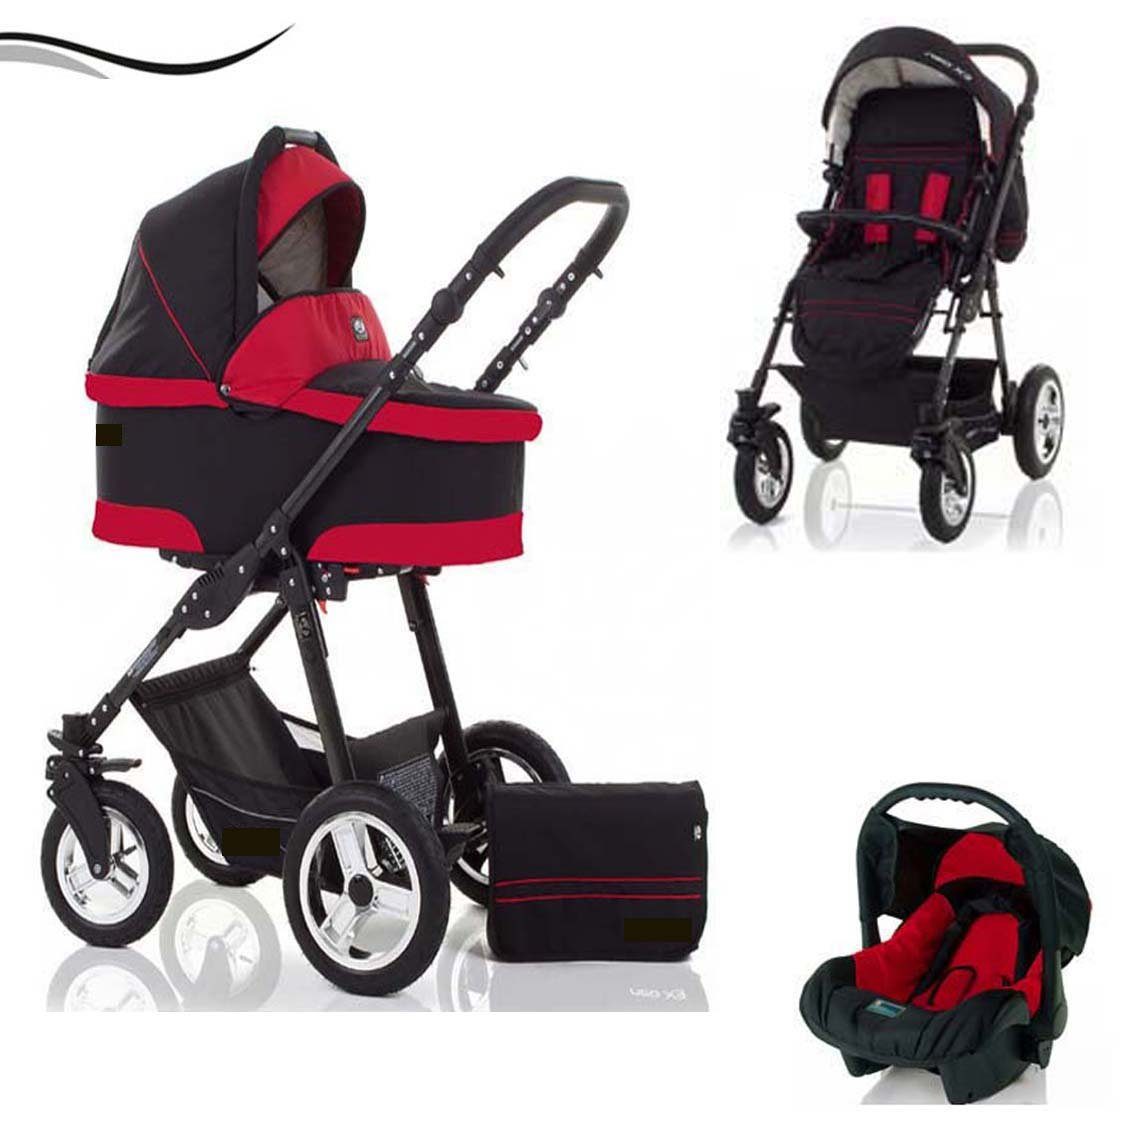 babies-on-wheels Kombi-Kinderwagen City Star 3 in 1 inkl. Autositz - 16 Teile - von Geburt bis 4 Jahre in 16 Farben Schwarz-Rot